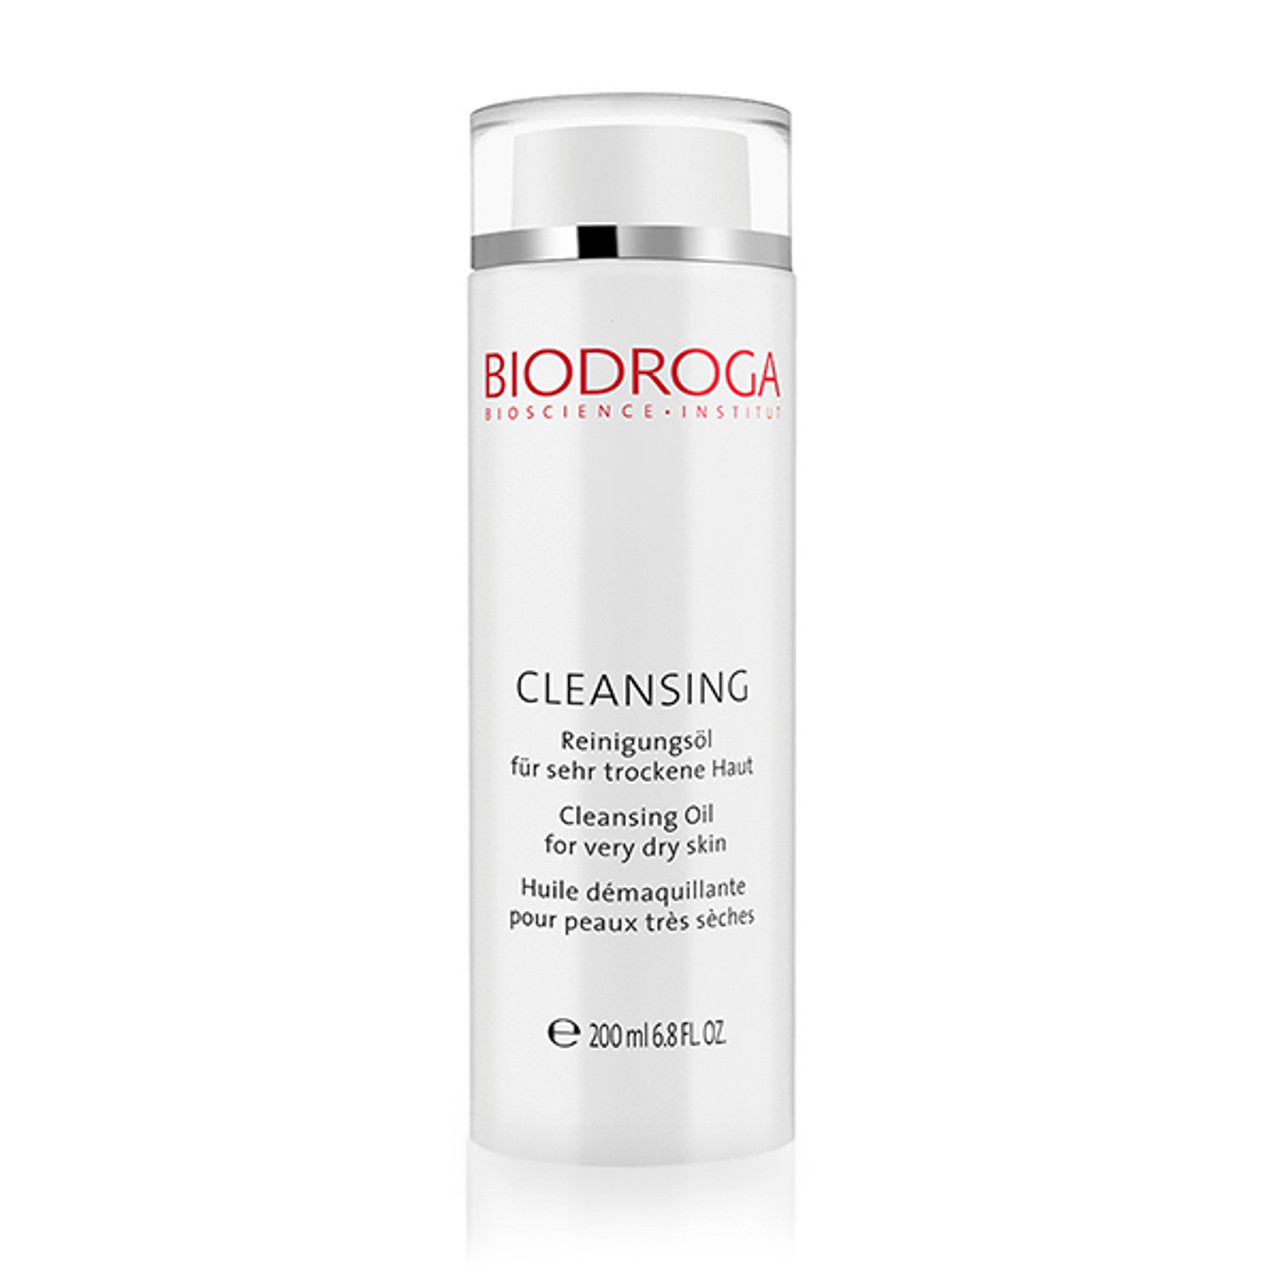 Biodroga Cleansing Oil for Very Dry Skin NEW - 6.8 oz